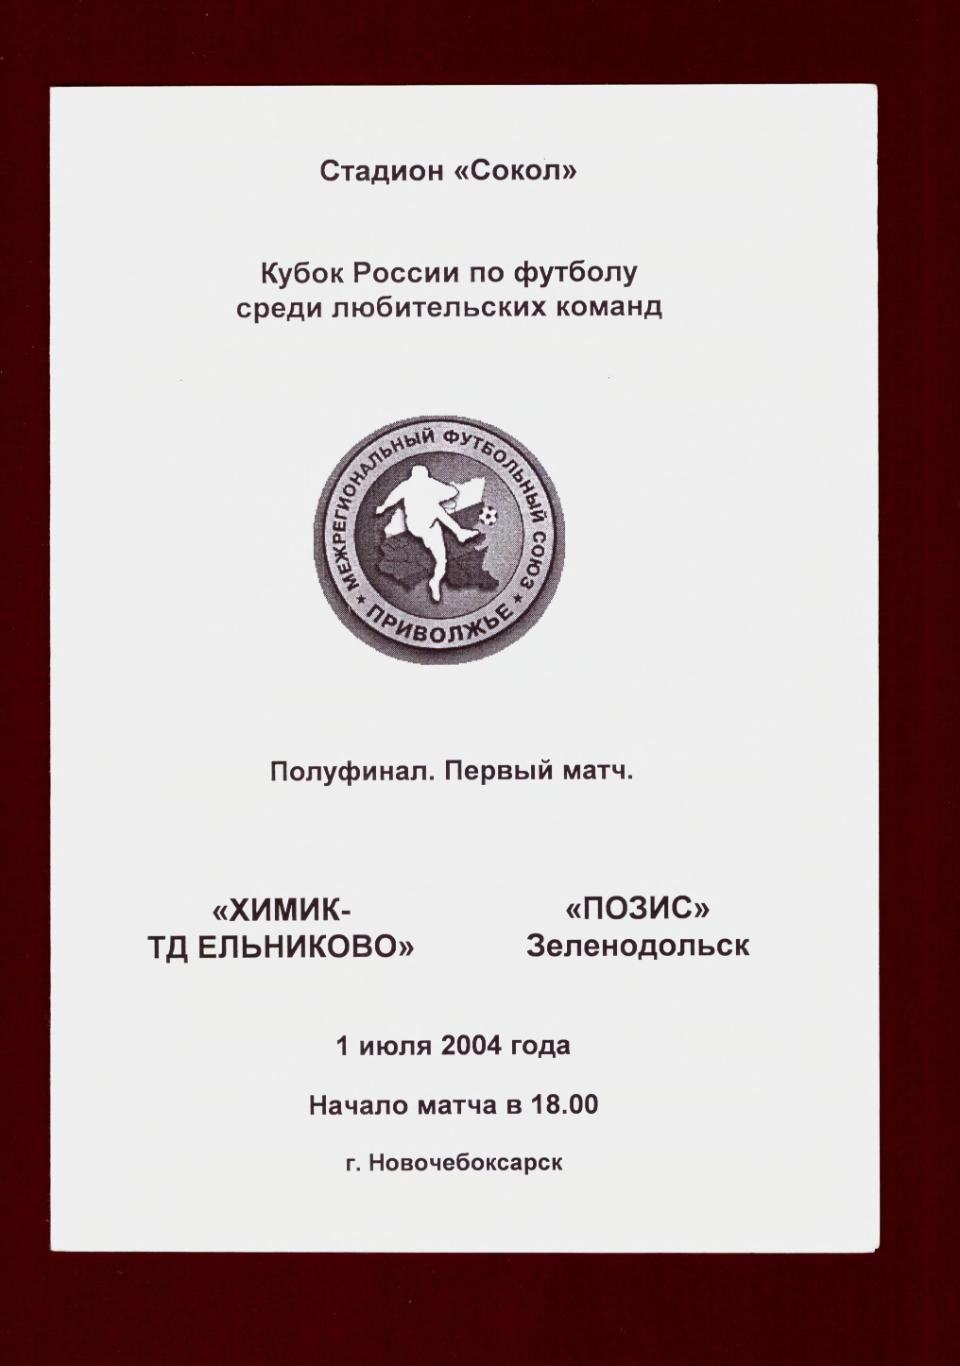 Химик-Ельниково - Позис Зеленодольск 2004 (Кубок, КФК)